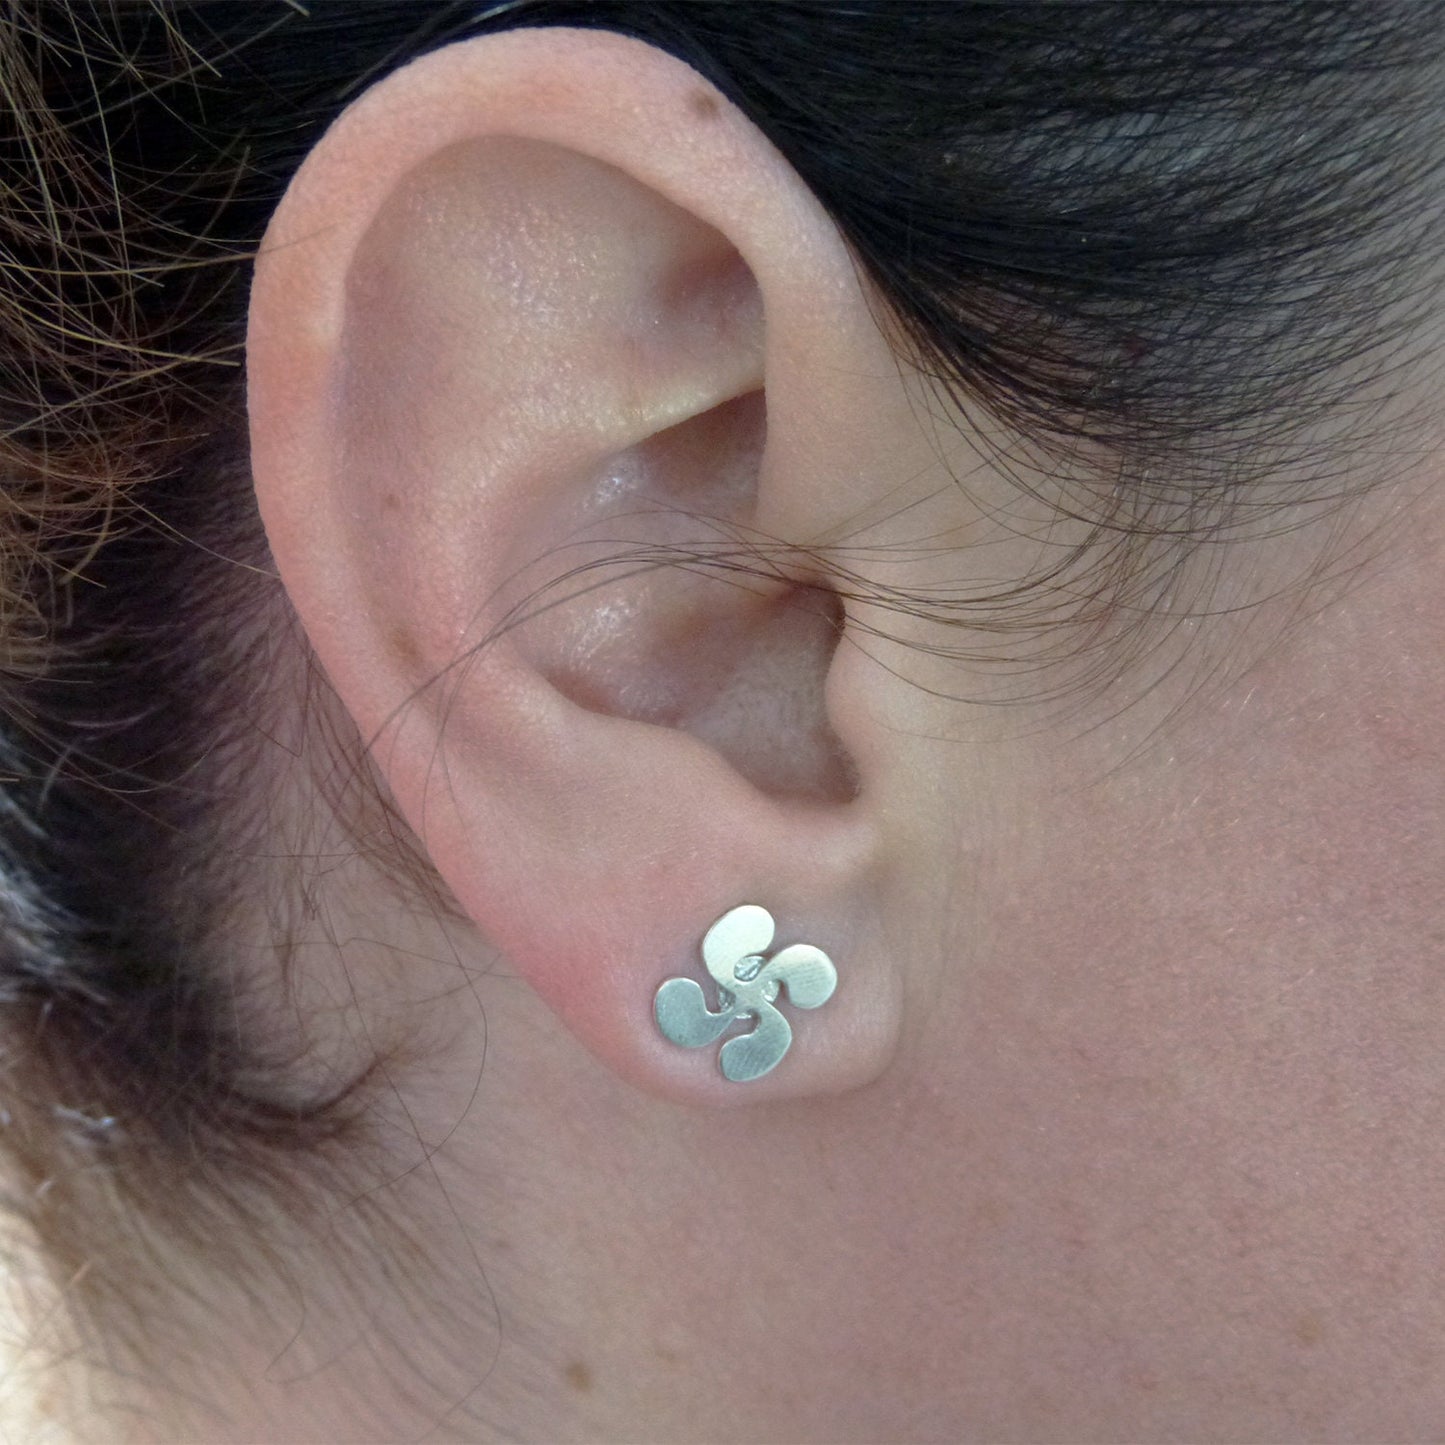 Lauburu earrings in 925 silver